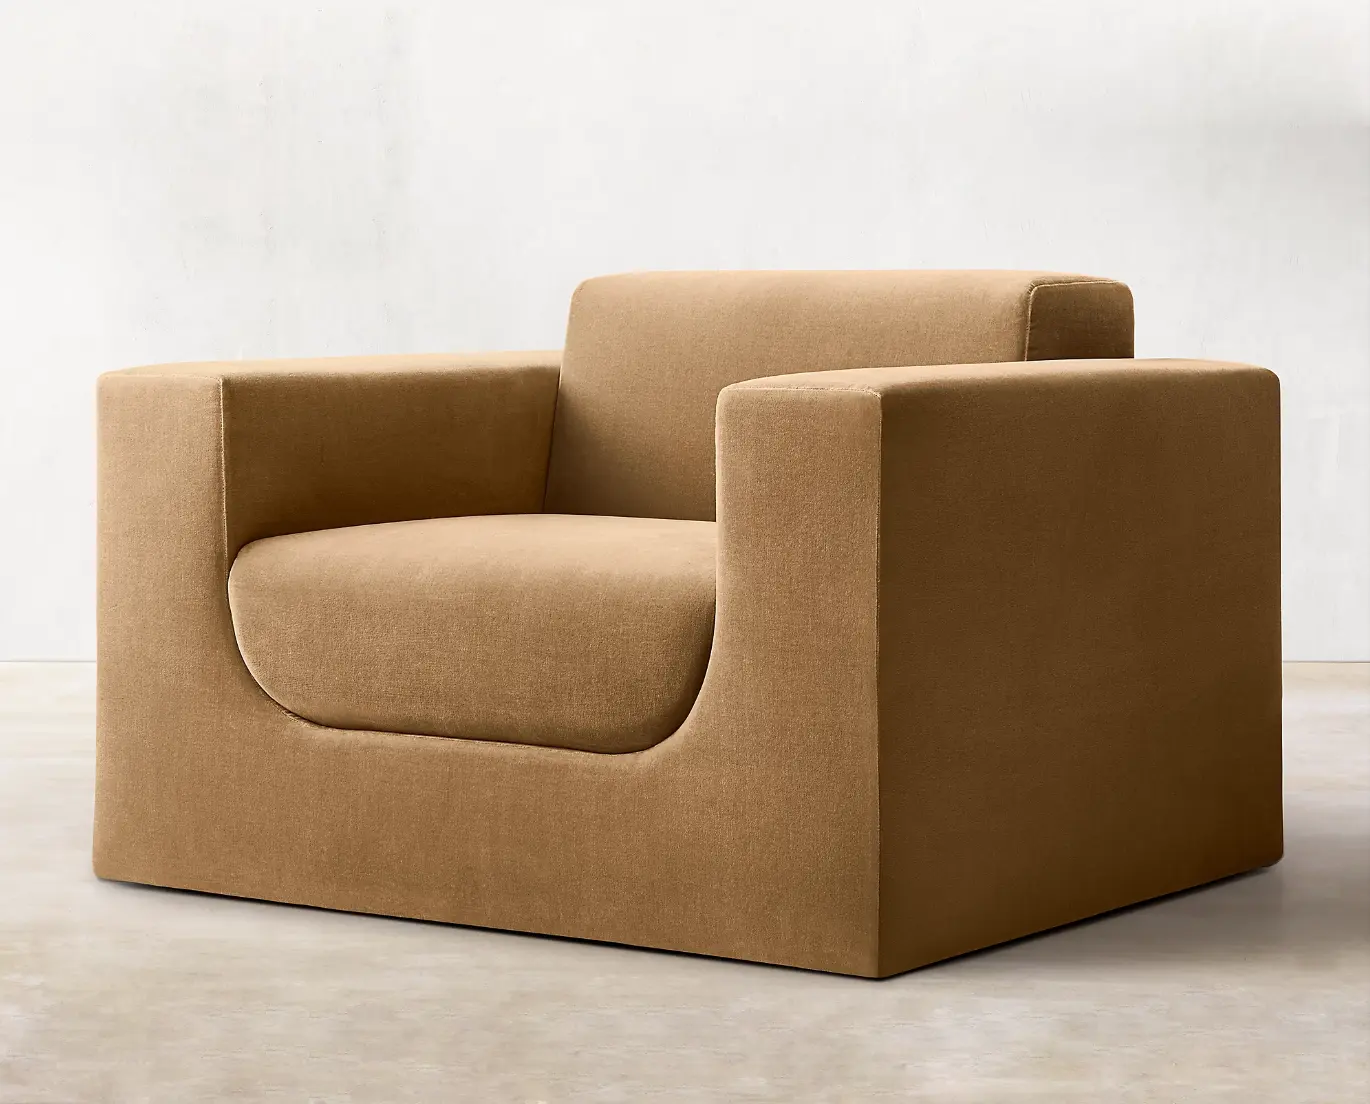 Cadeira de sofá italiana moderna, confortável, confortável, solteiro, confortável, nórdico, confortável, para casa, salão de beleza